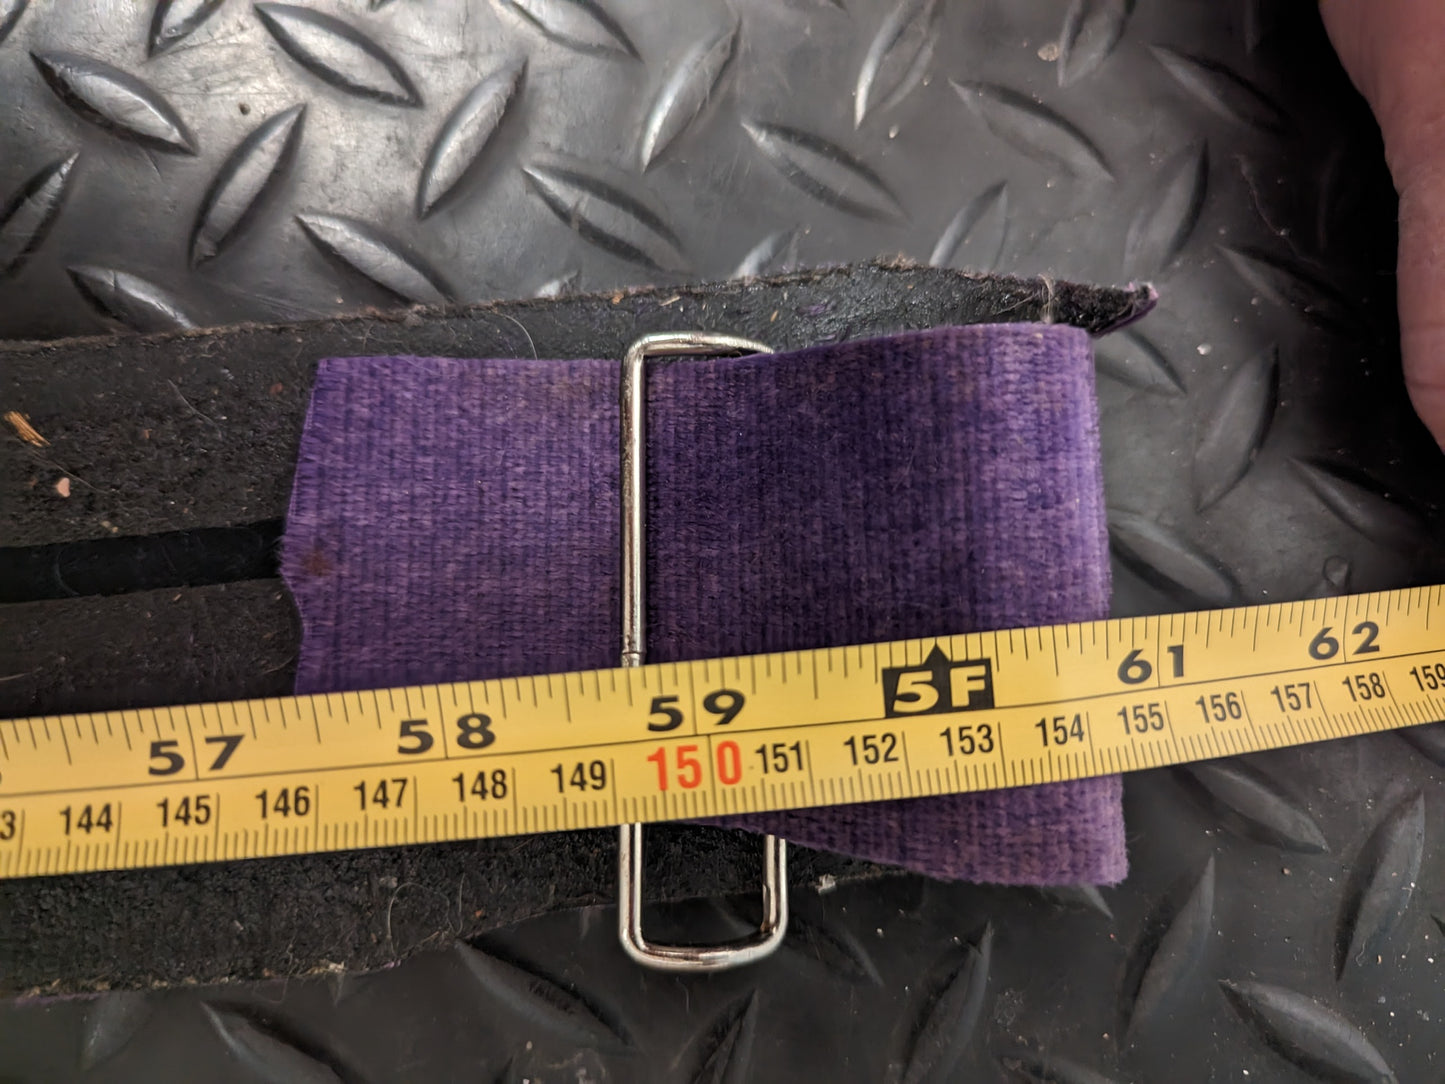 Ascension Enterprises XC Climbing Skins Size 155 Cm Color Purple Condition Used